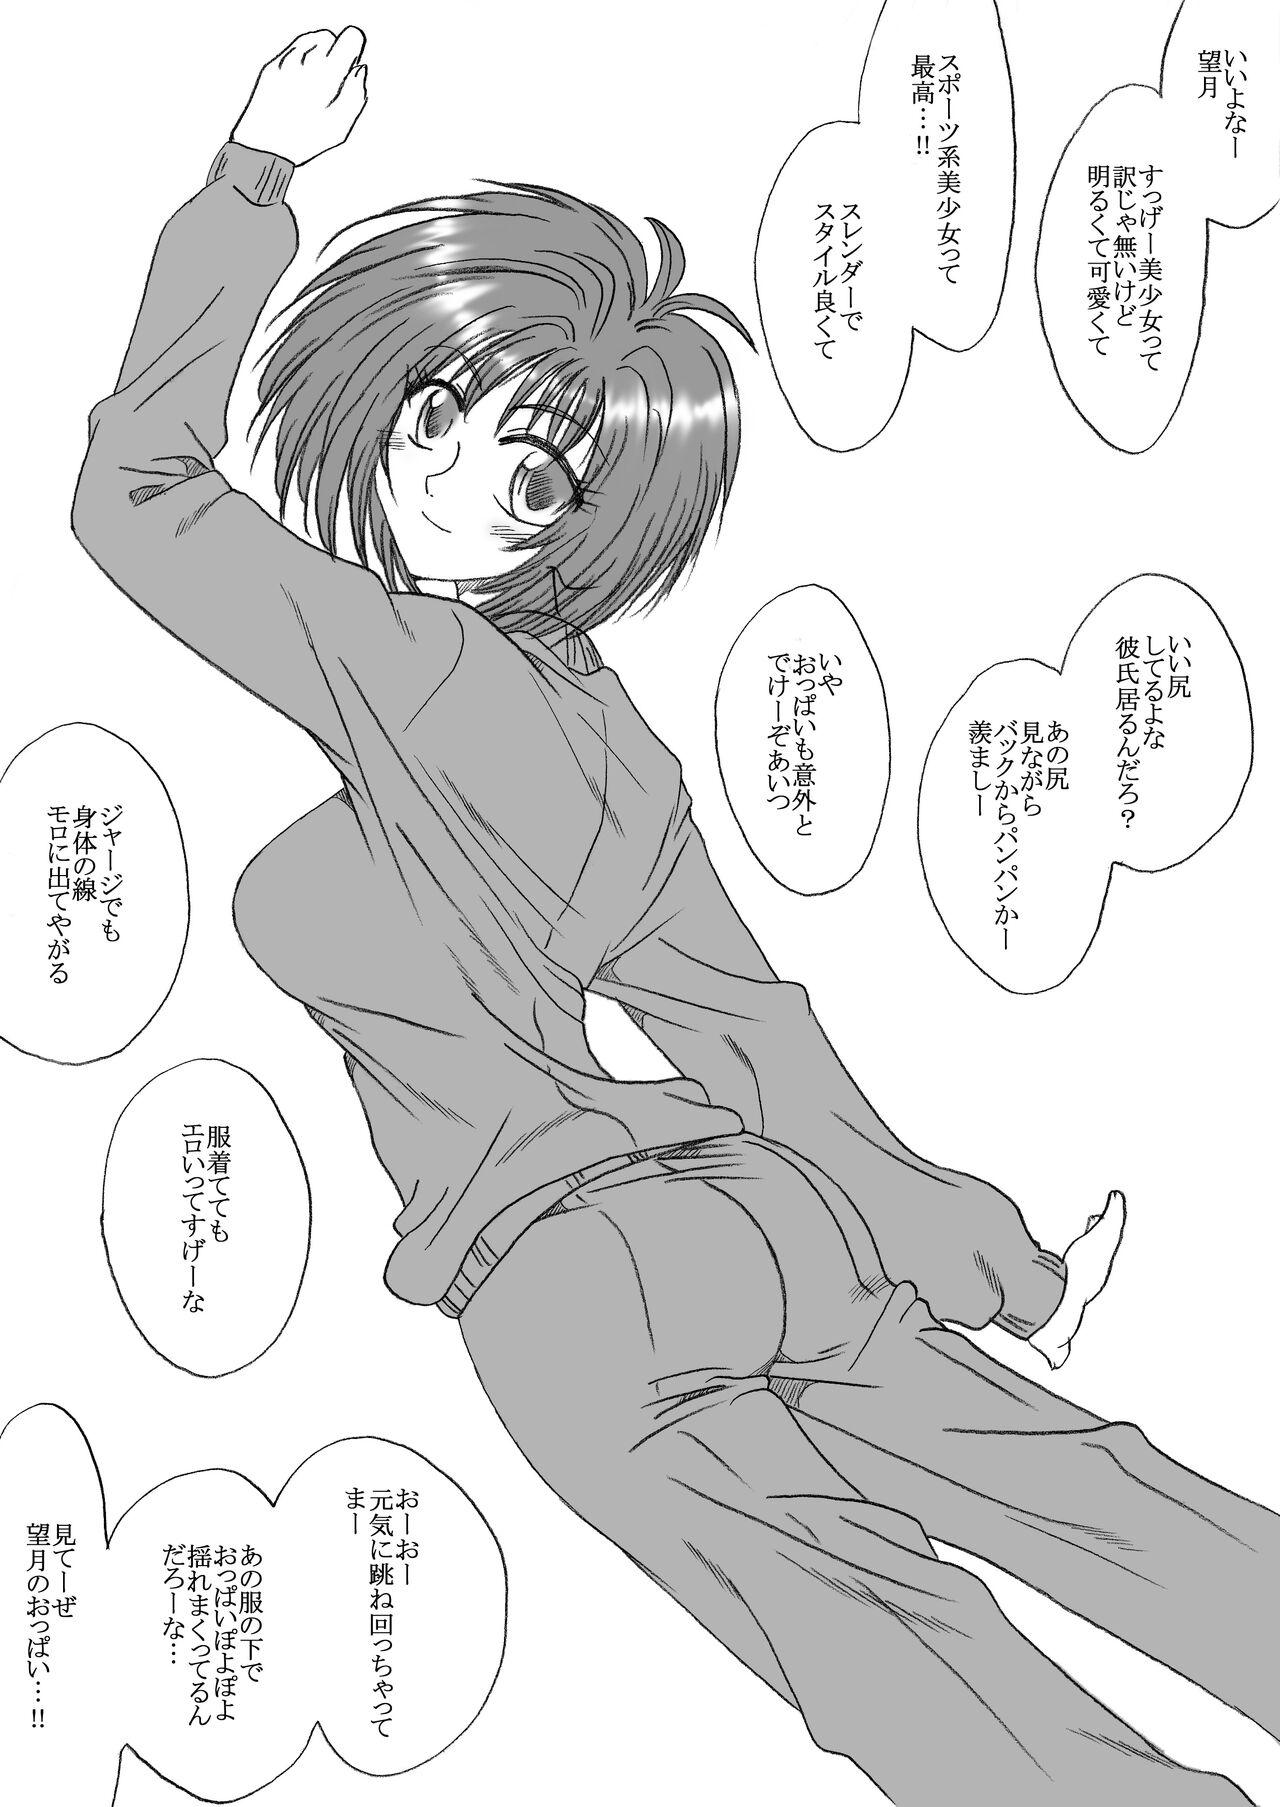 Sucking Yuka-chan, Rachi Seduction - Picture 1